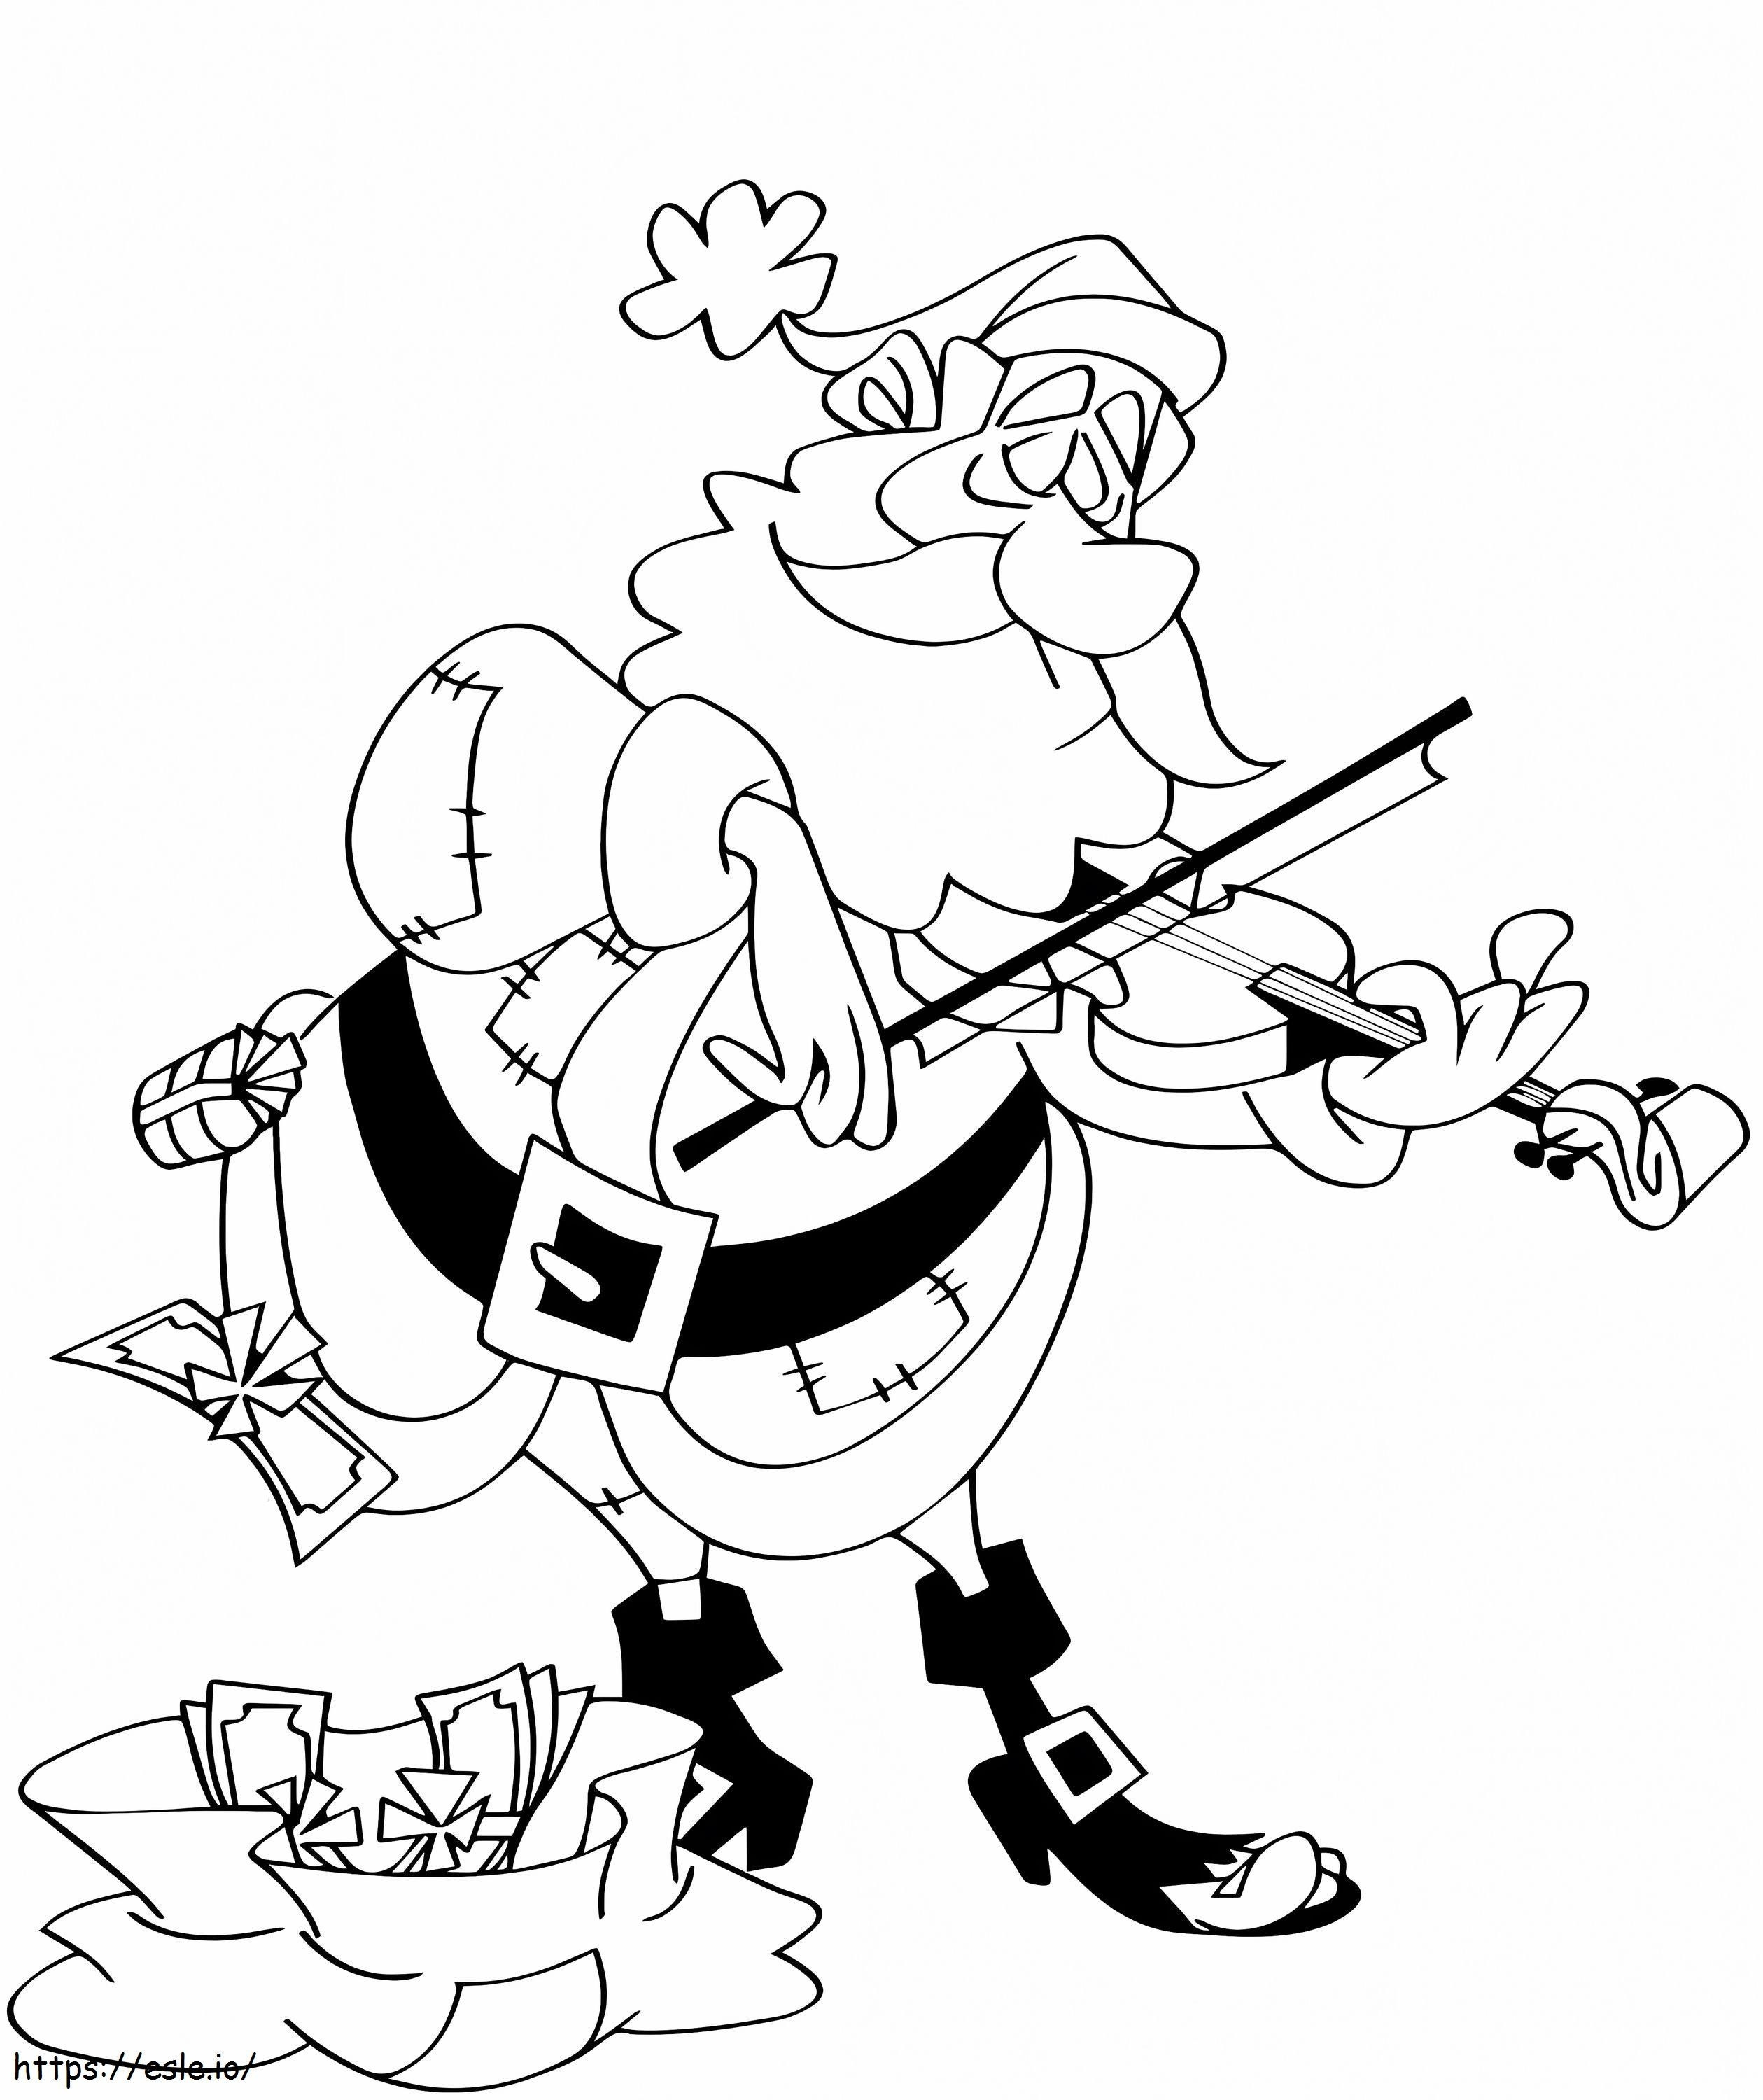 Santa Playing The Violin coloring page